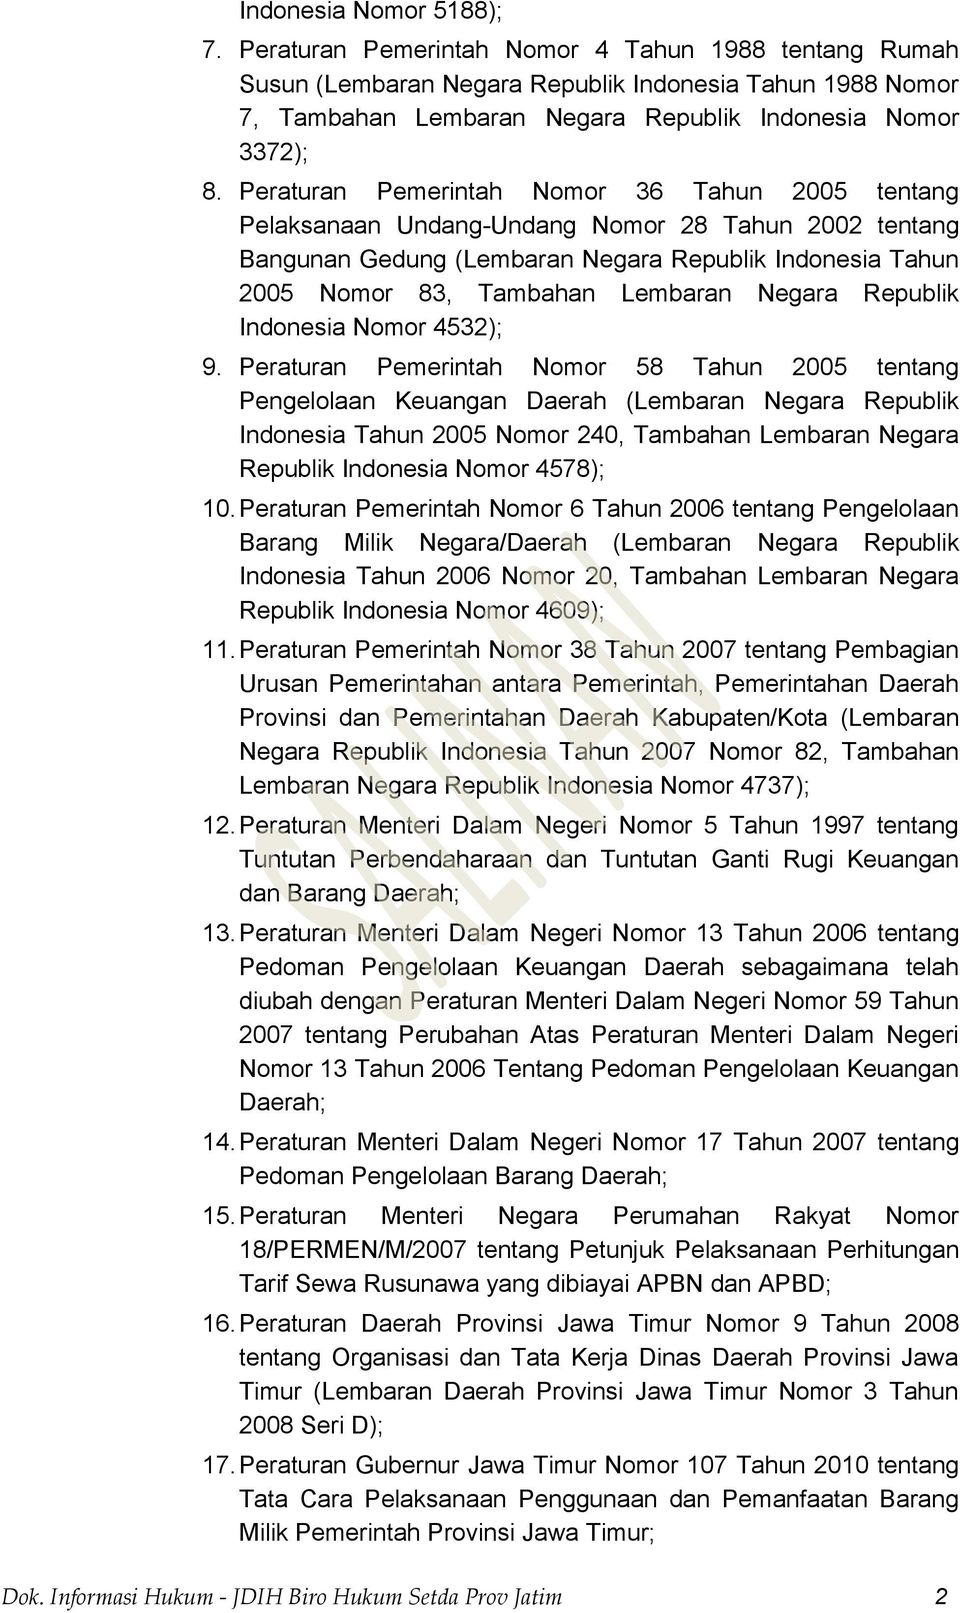 Peraturan Pemerintah Nomor 36 Tahun 2005 tentang Pelaksanaan Undang-Undang Nomor 28 Tahun 2002 tentang Bangunan Gedung (Lembaran Negara Republik Indonesia Tahun 2005 Nomor 83, Tambahan Lembaran